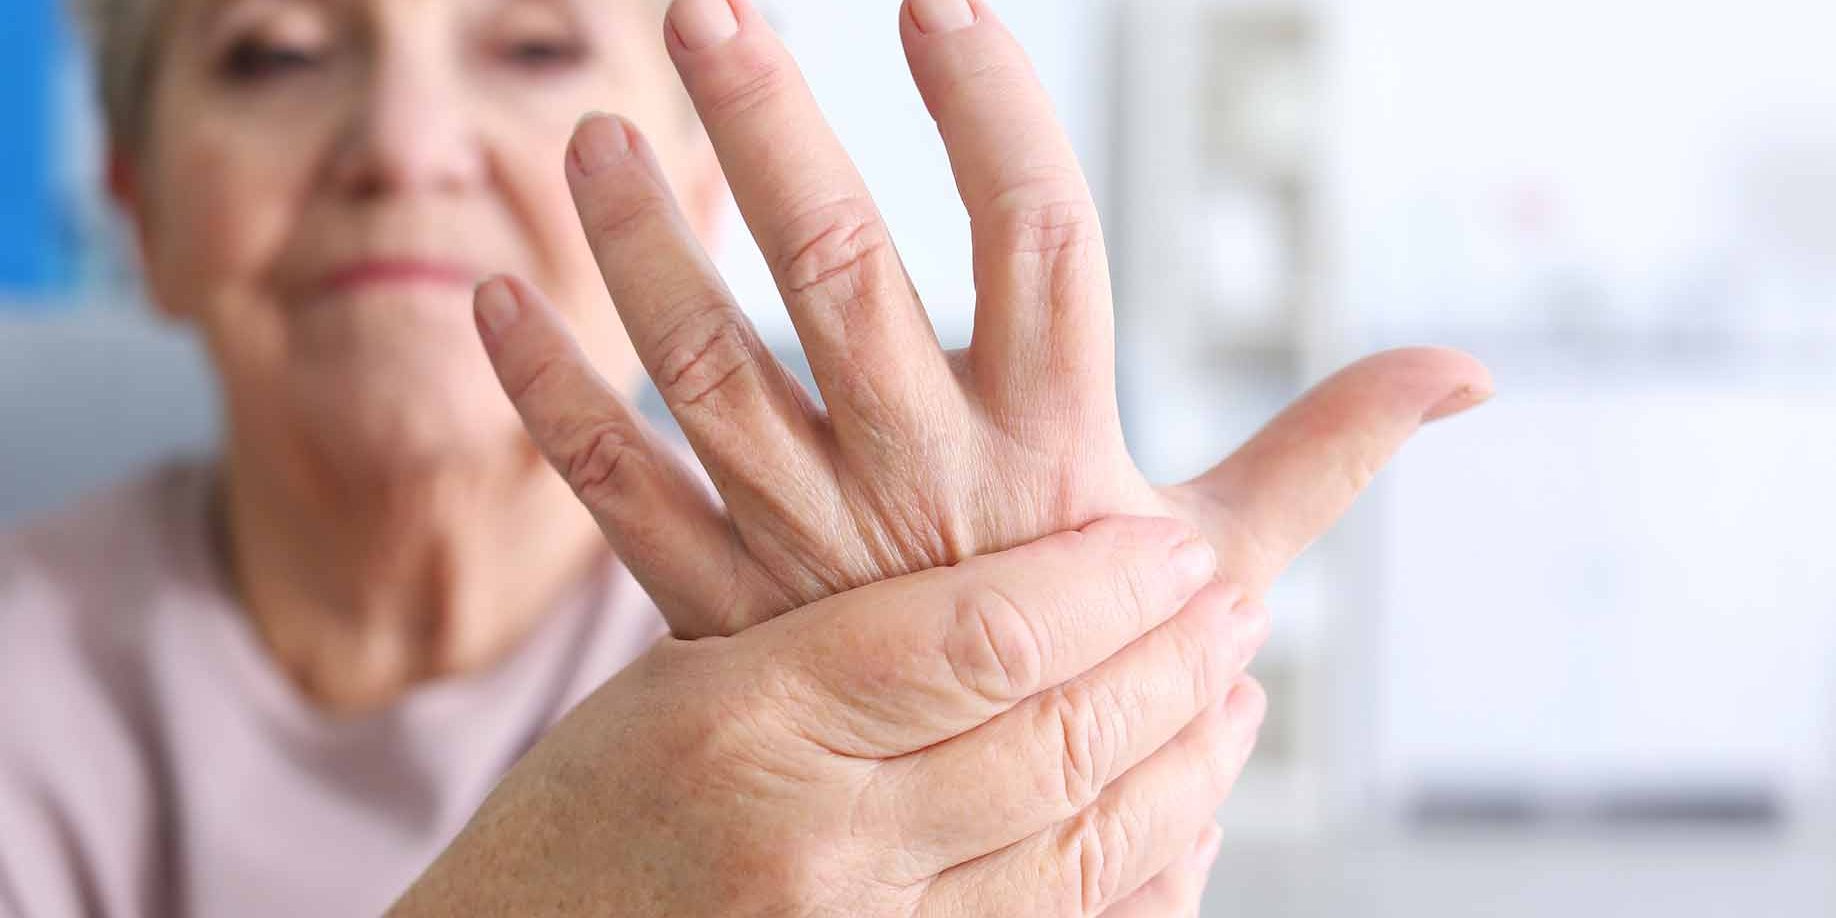 gydymas sąnarių ir sezamo skausmas nykščio rankų priežastis ir gydymo sąnario